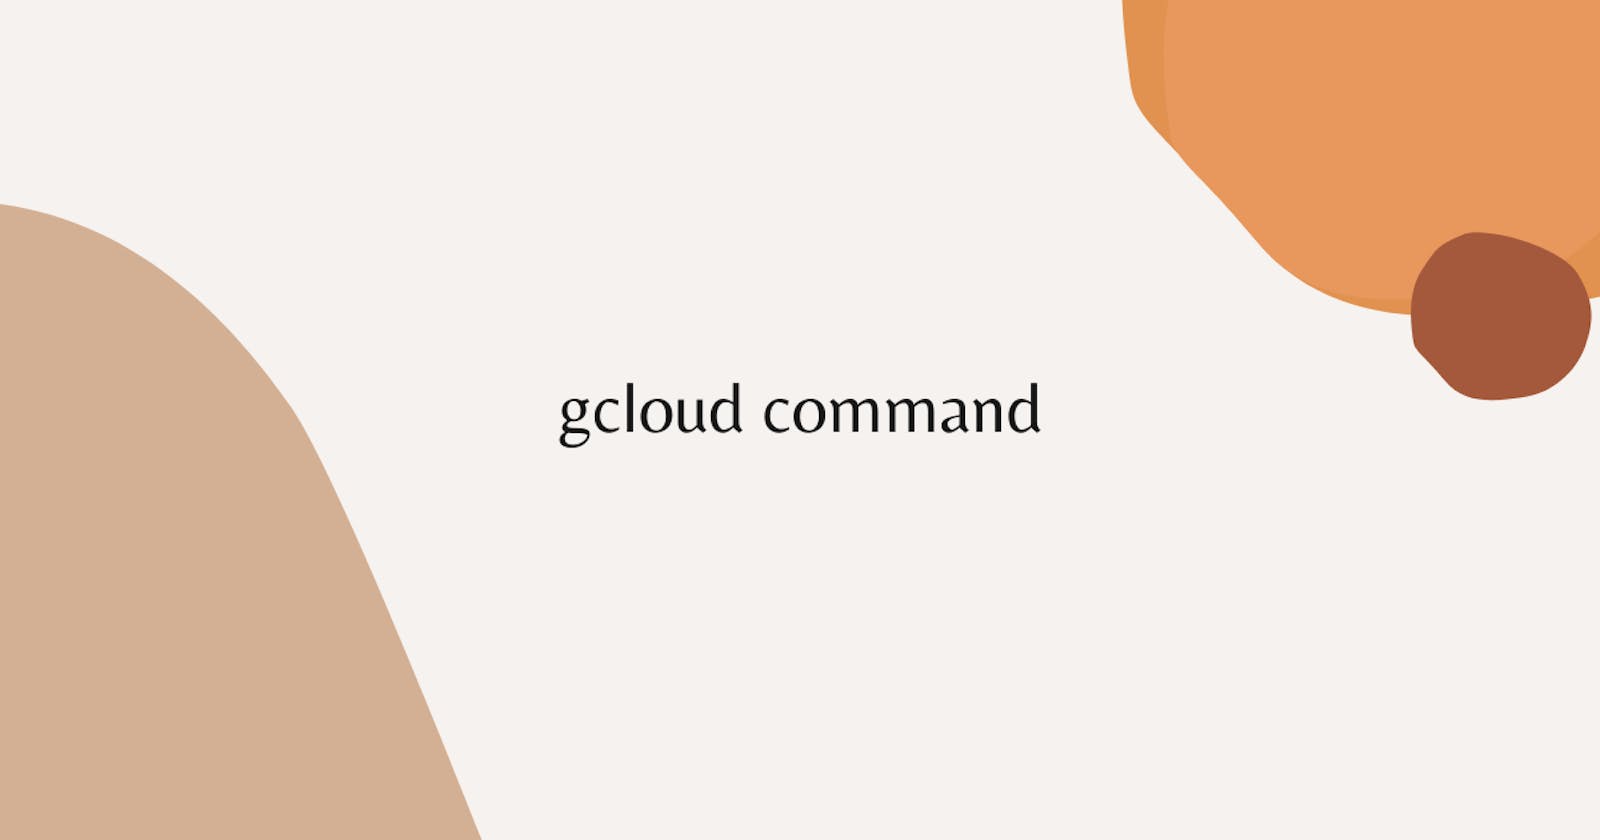 gcloud command